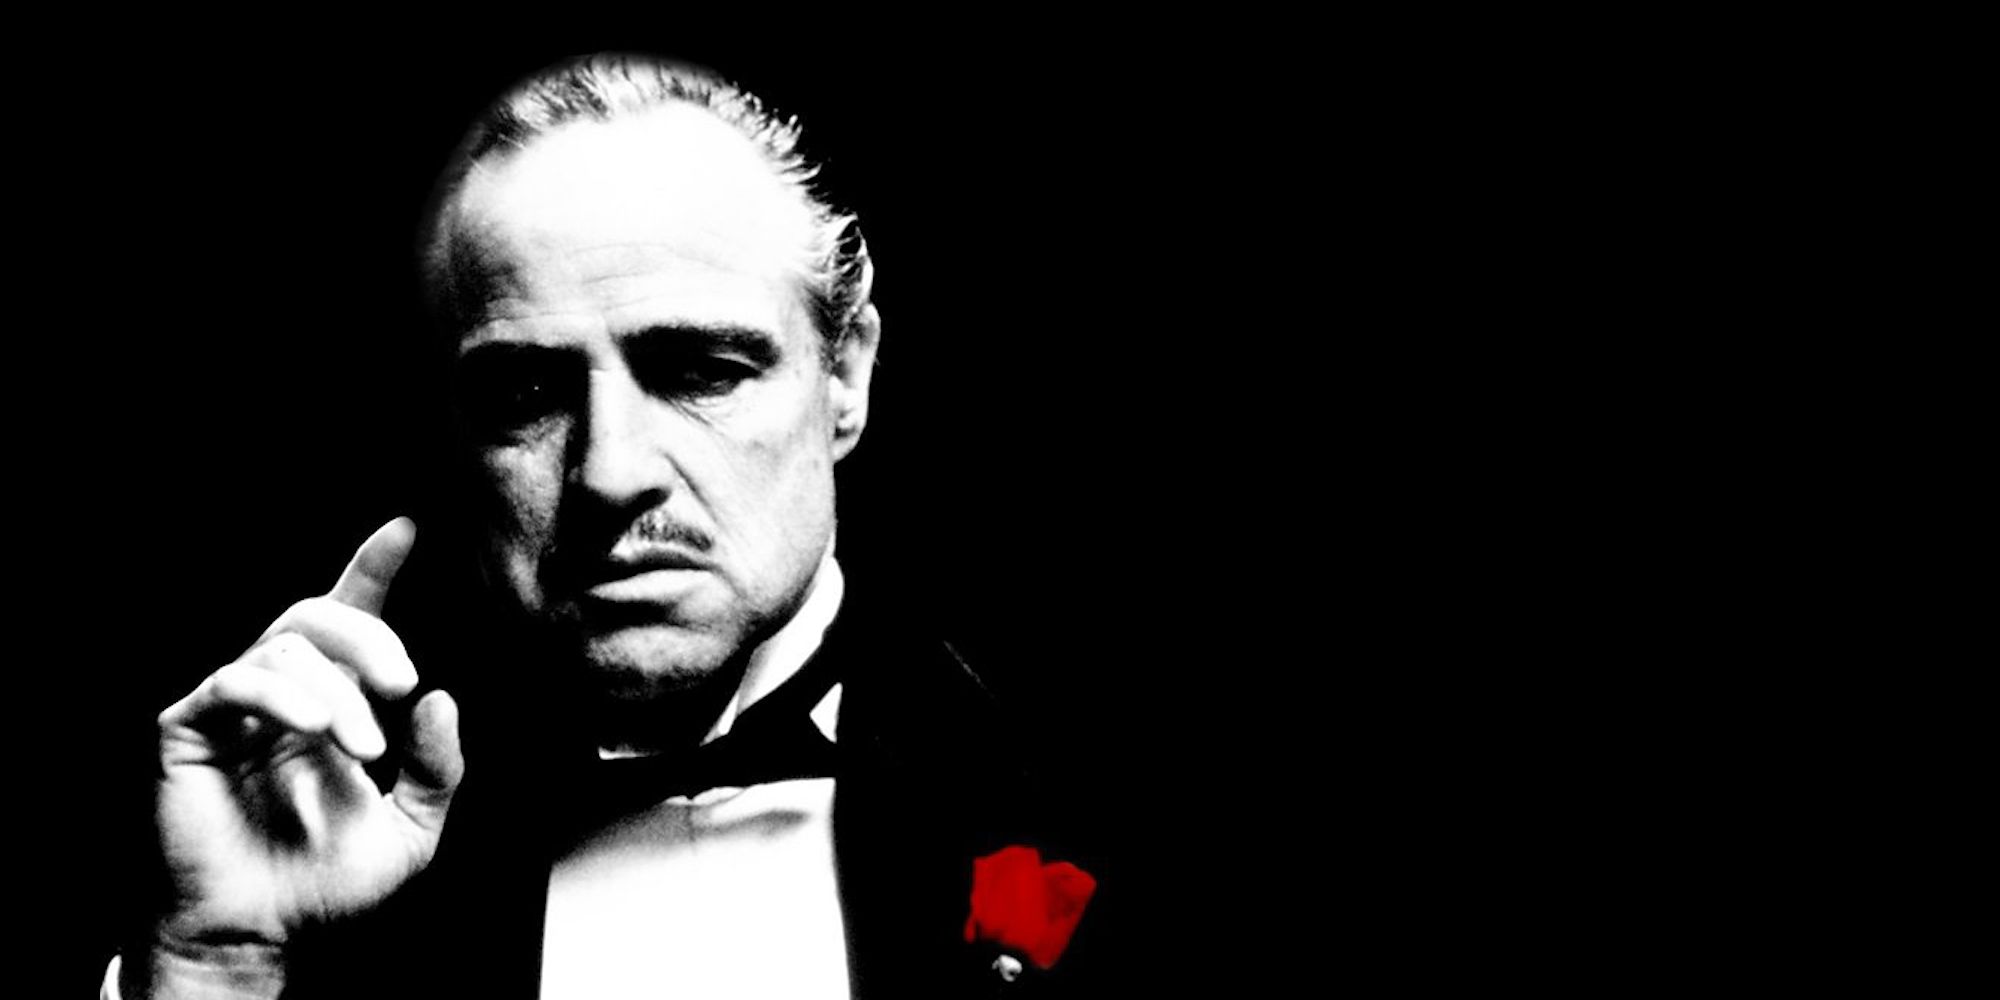 Крестный отец может быть брат. The Godfather. Вито Корлеоне. Дон Корлеоне с сигарой. Марлон Брандо крестный отец Мем.